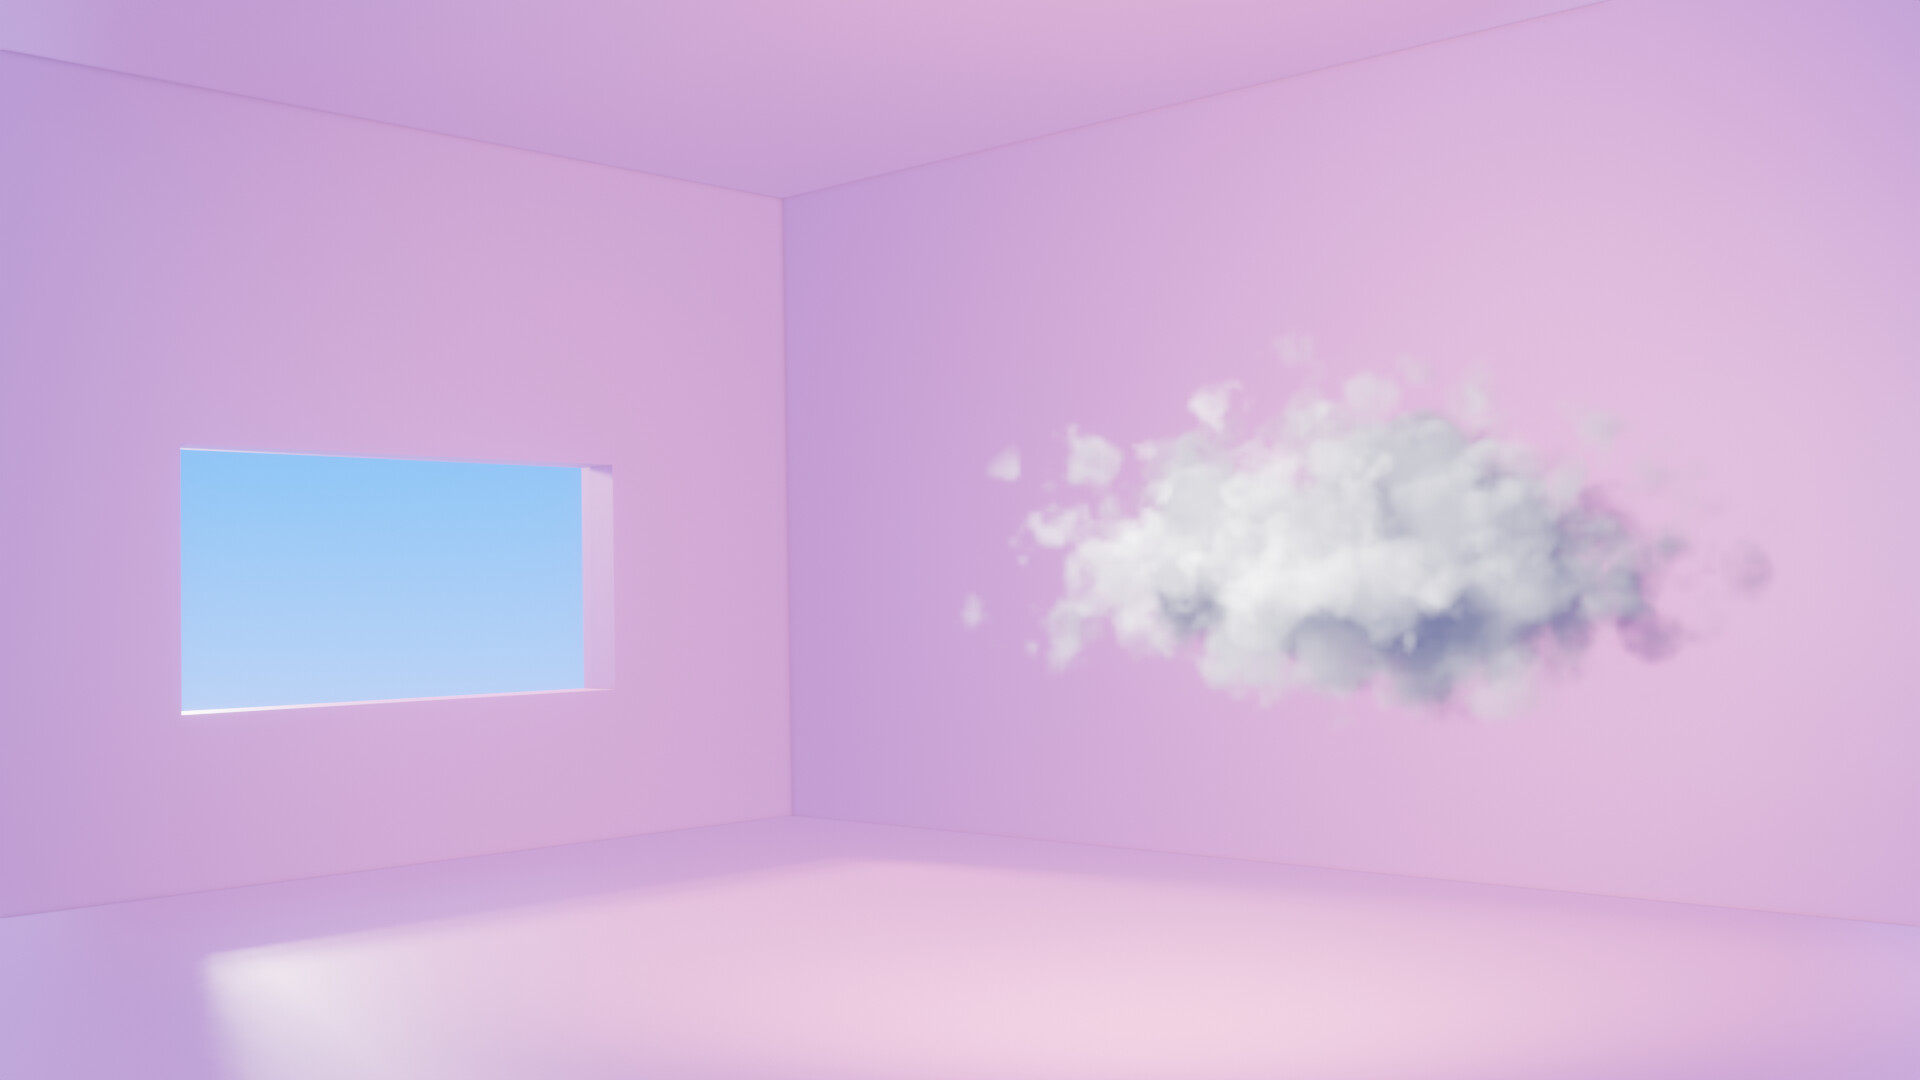 Procedural clouds là một kỹ thuật độc đáo để tạo ra những hình ảnh động thú vị với đám mây sinh động. Hãy xem hình ảnh liên quan để bắt đầu chuyến phiêu lưu qua những gam màu và hình dáng đa dạng của những đám mây trong cảnh vật. Bạn sẽ có trải nghiệm tuyệt vời với procedural clouds.